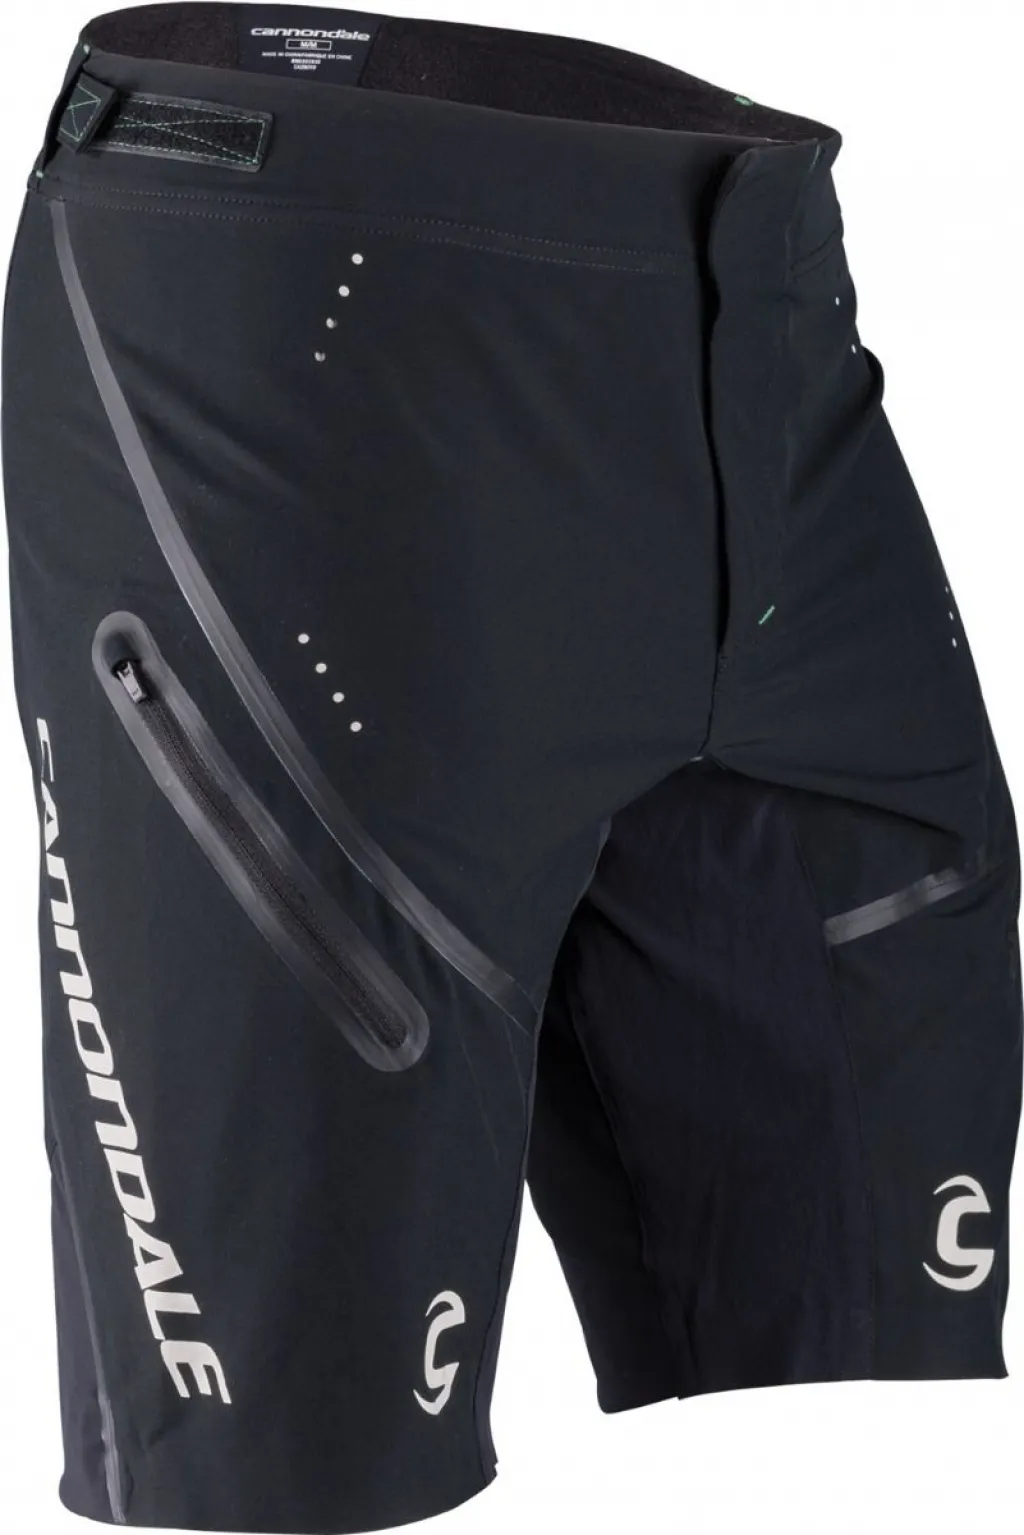 Велошорты Cannondale CFR PRO OVER SHORT, мужские, BLK (черные), XL